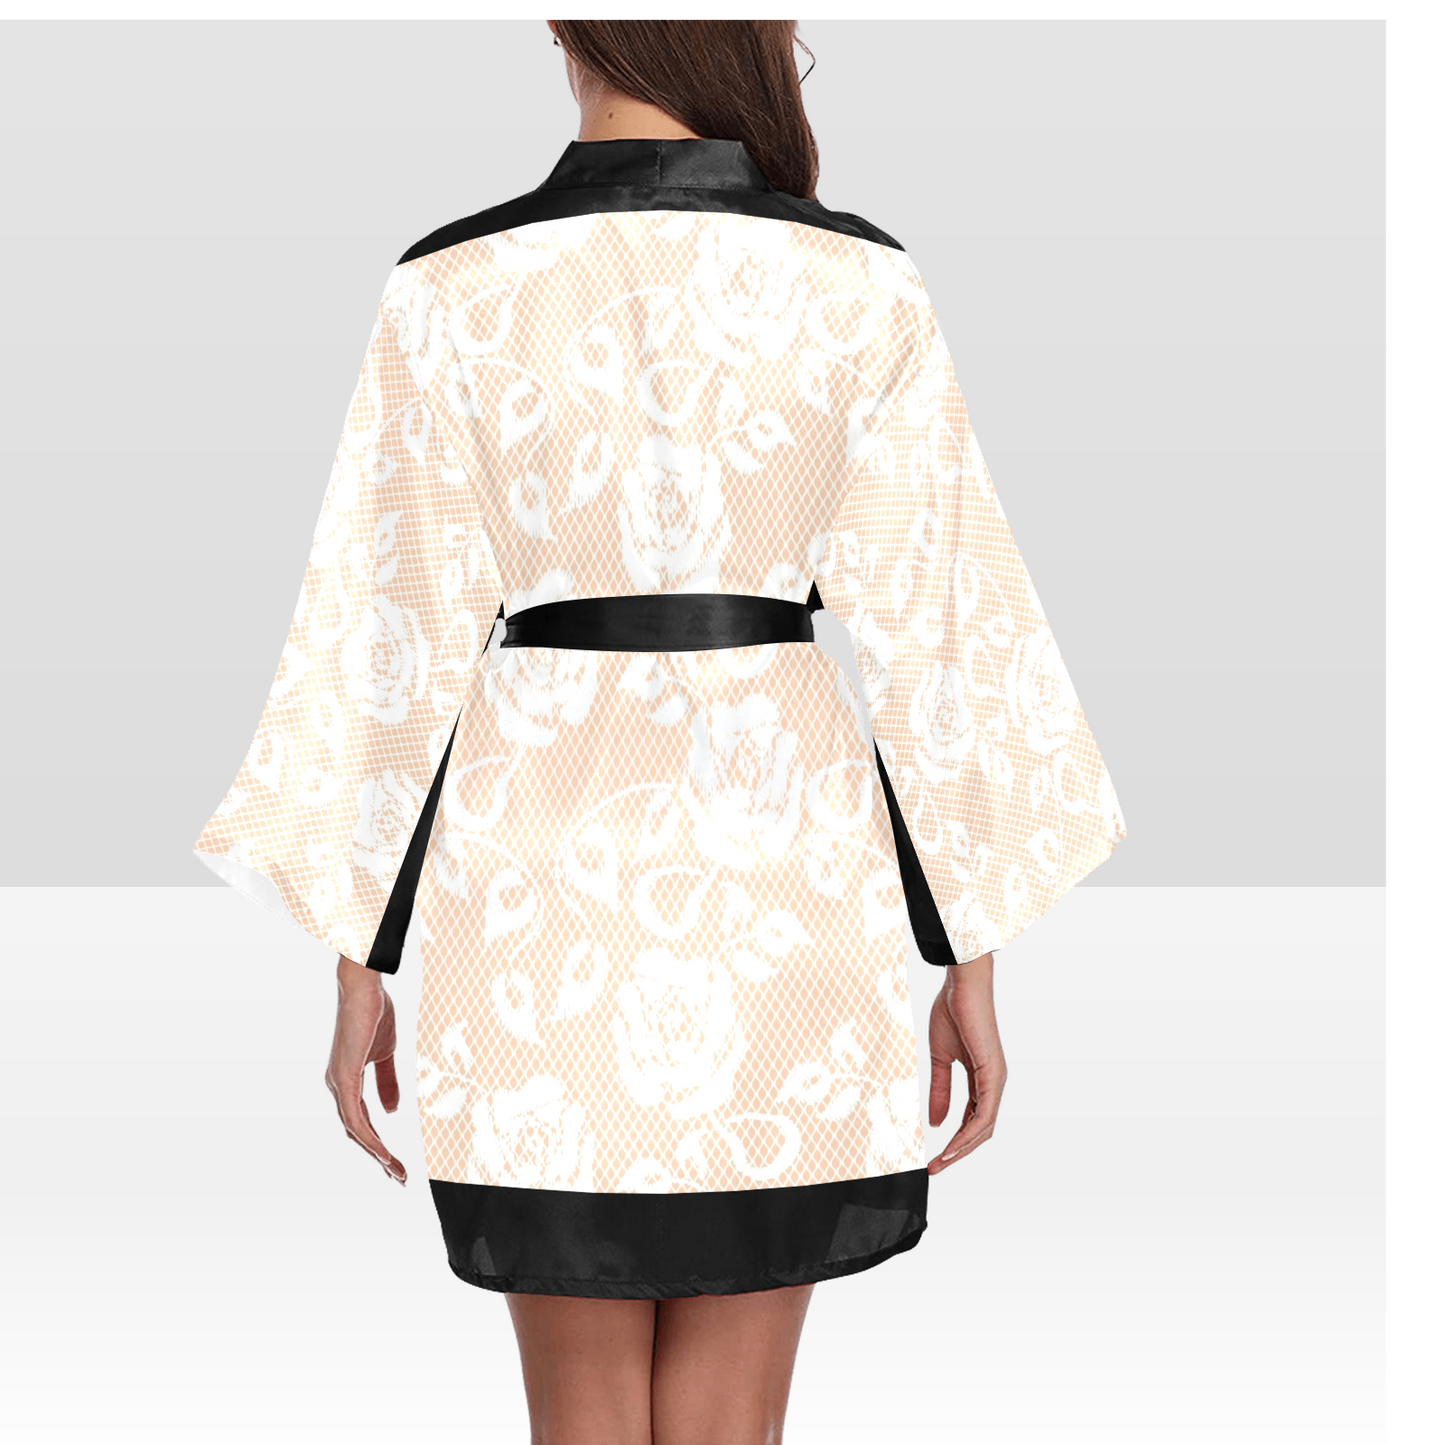 Victorian Lace Kimono Robe, Black or White Trim, Sizes XS to 2XL, Design 16